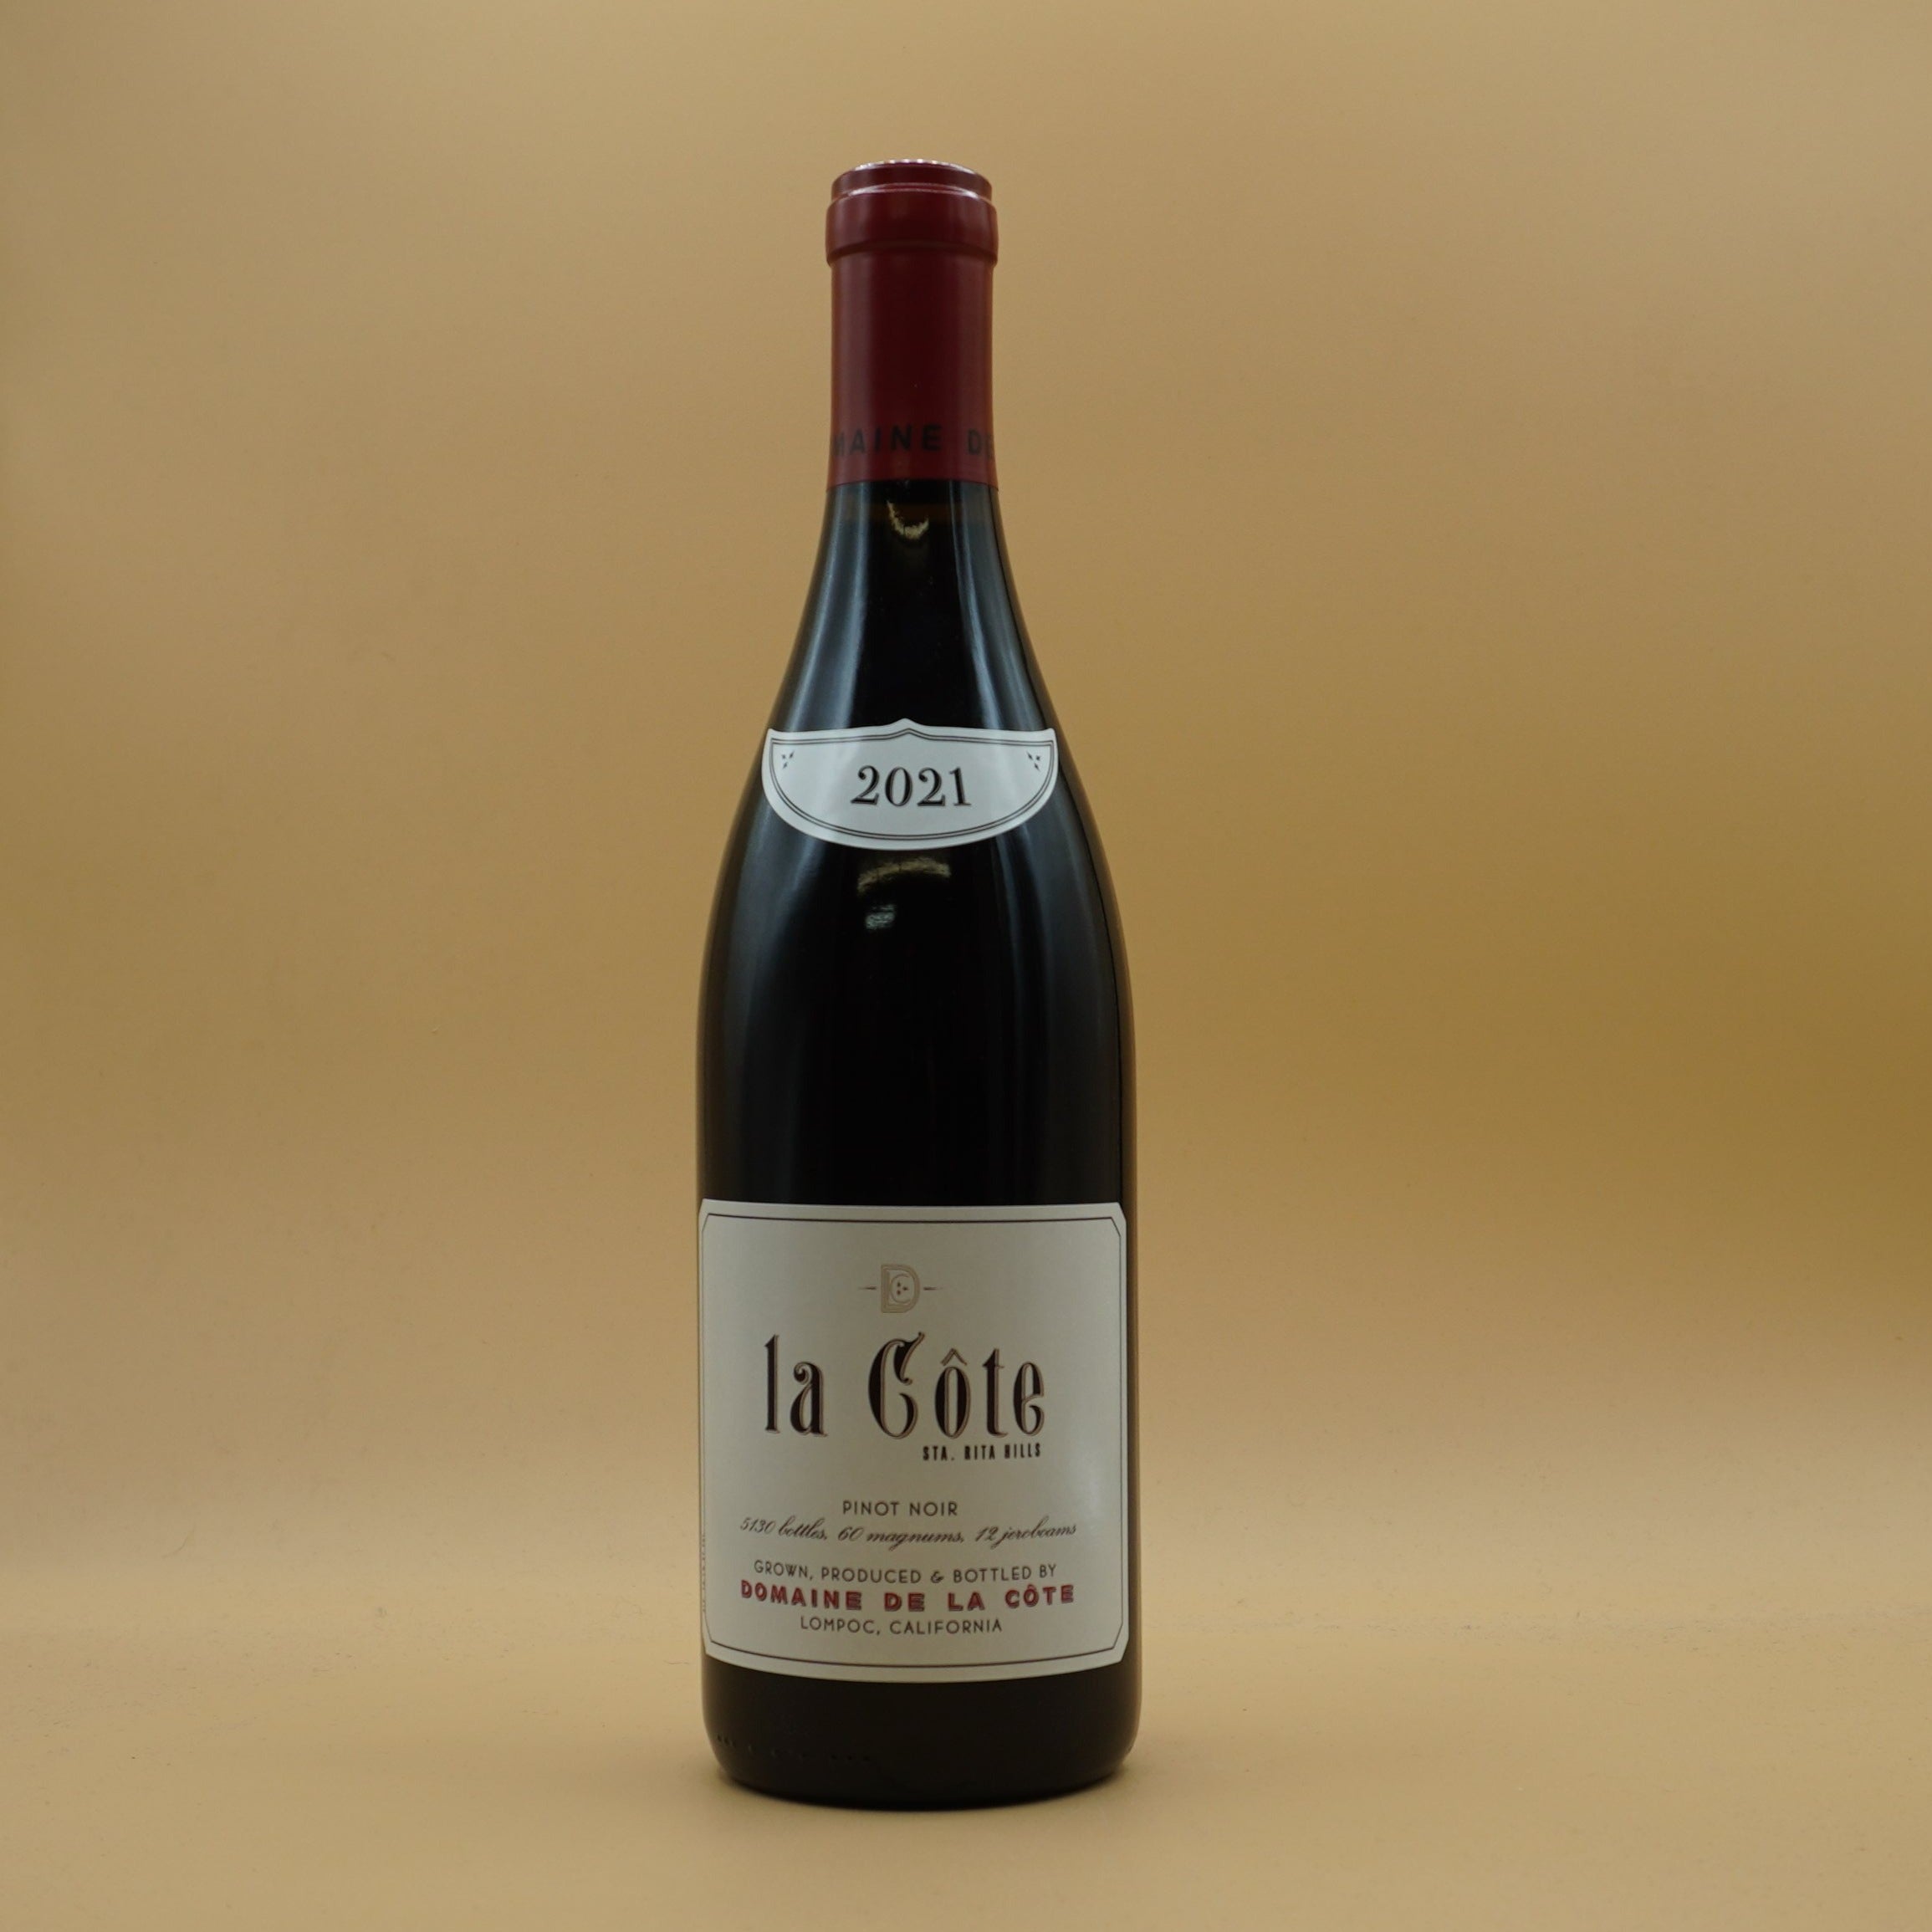 Domaine de la Cote, 'La Côte' Pinot Noir 2021